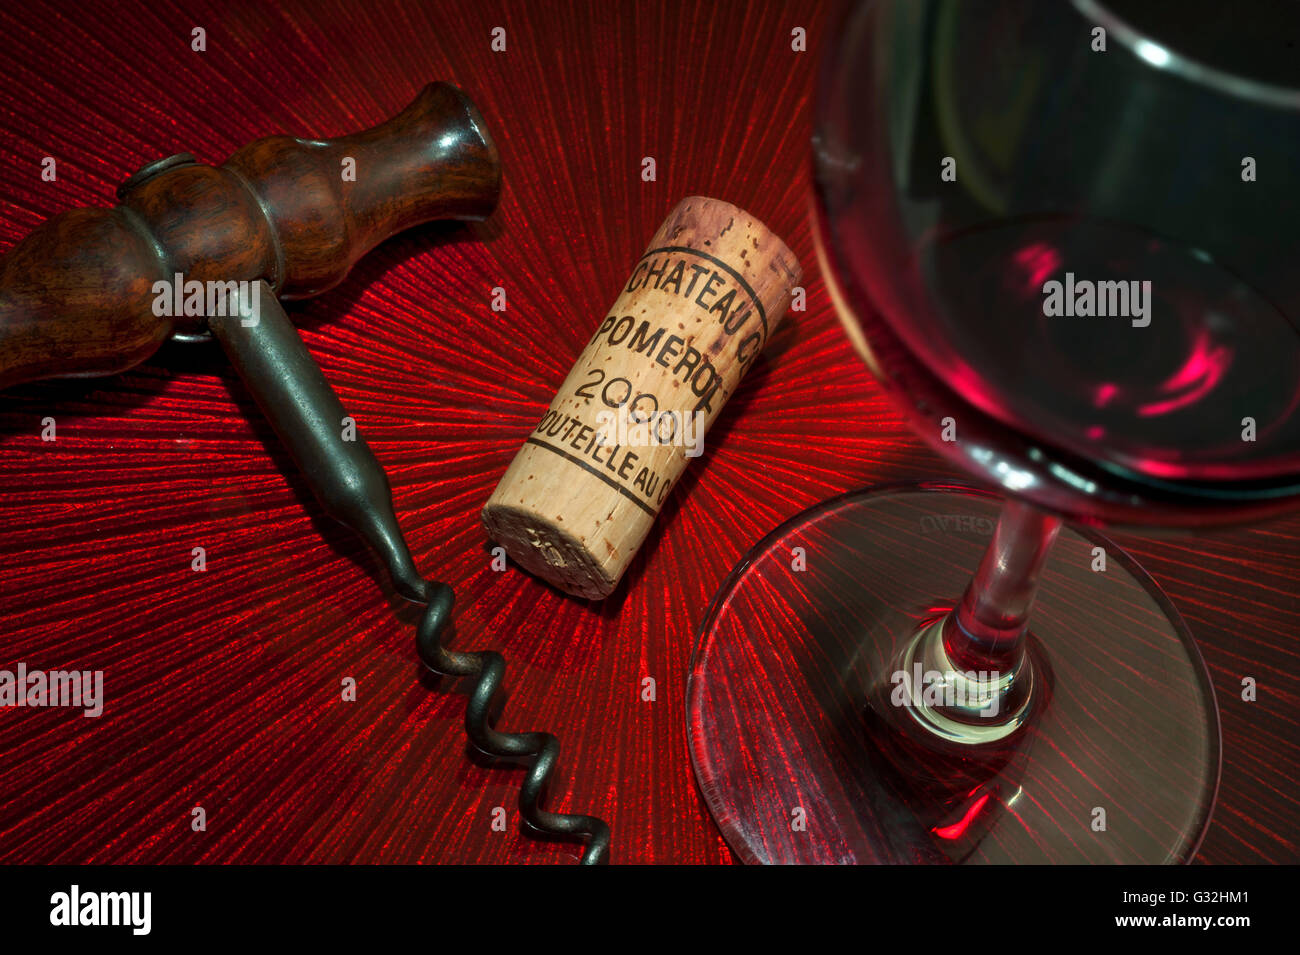 Chatea Vieux Certan Corkscrew verre de vin rouge et 2000 Château en bouteille de liège Pomerol sur une table de dégustation de luxe Banque D'Images